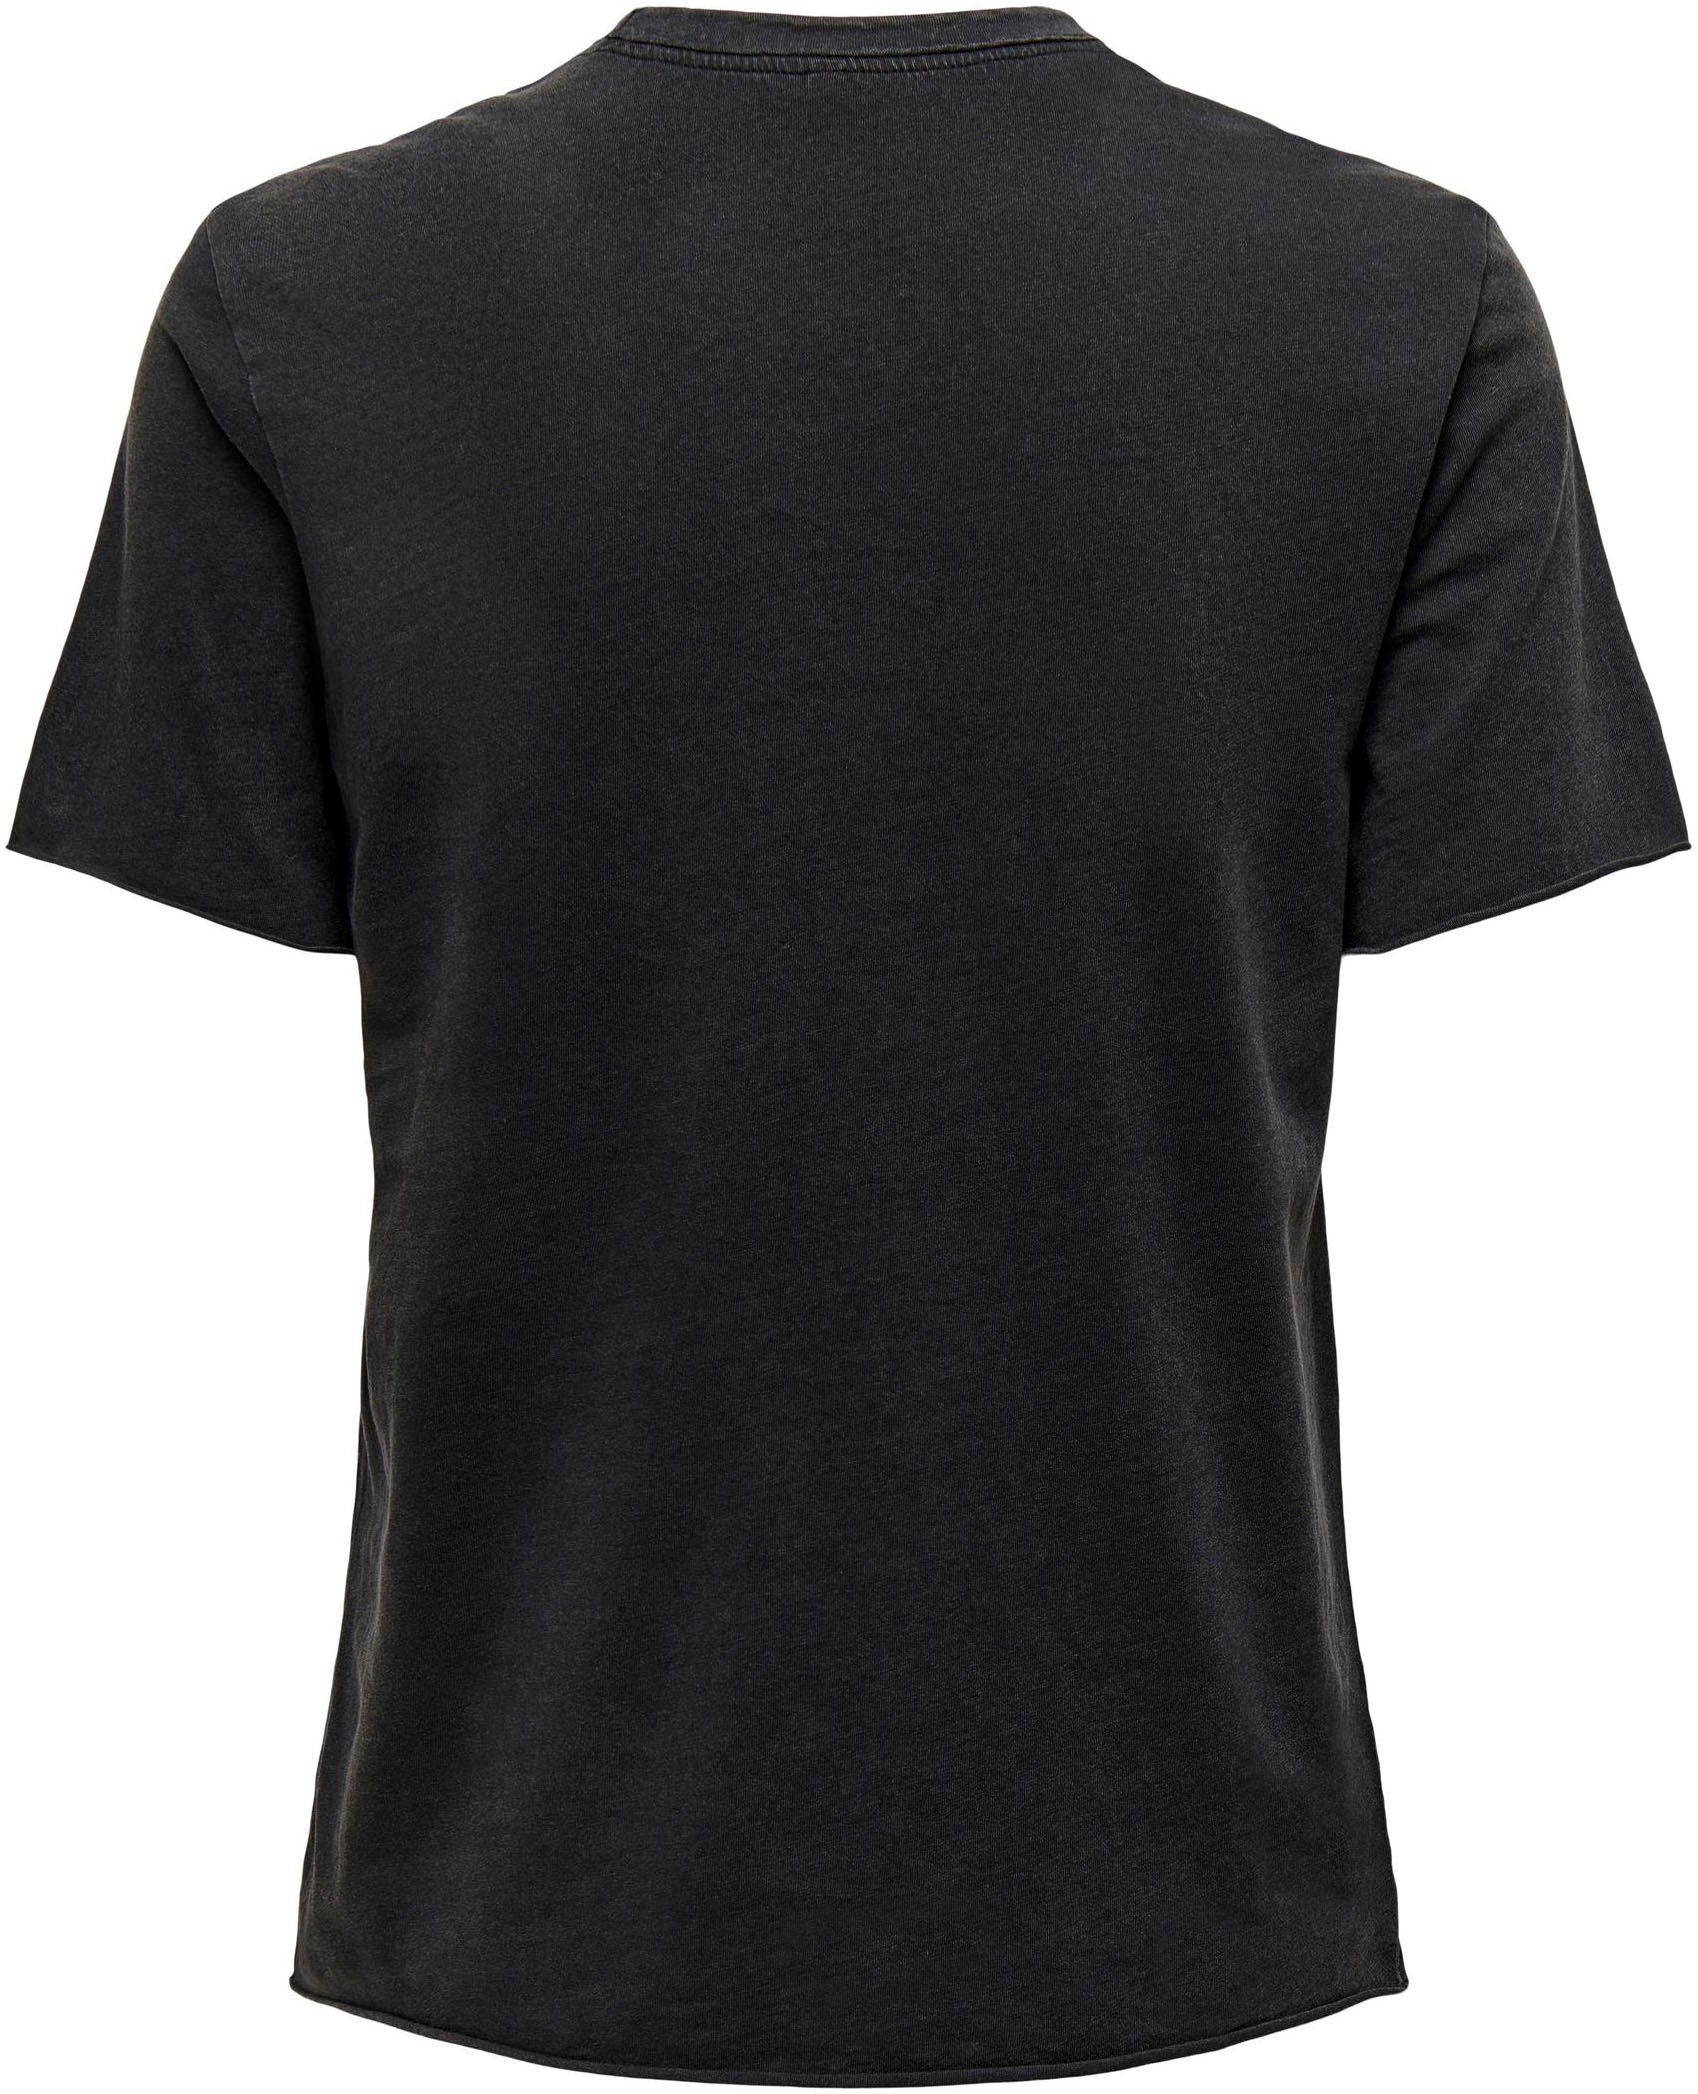 ONLY Black NOOS Rundhalsshirt bedruckt Print:Genuine JRS unterschiedlich S/S REG ONLLUCY TOP